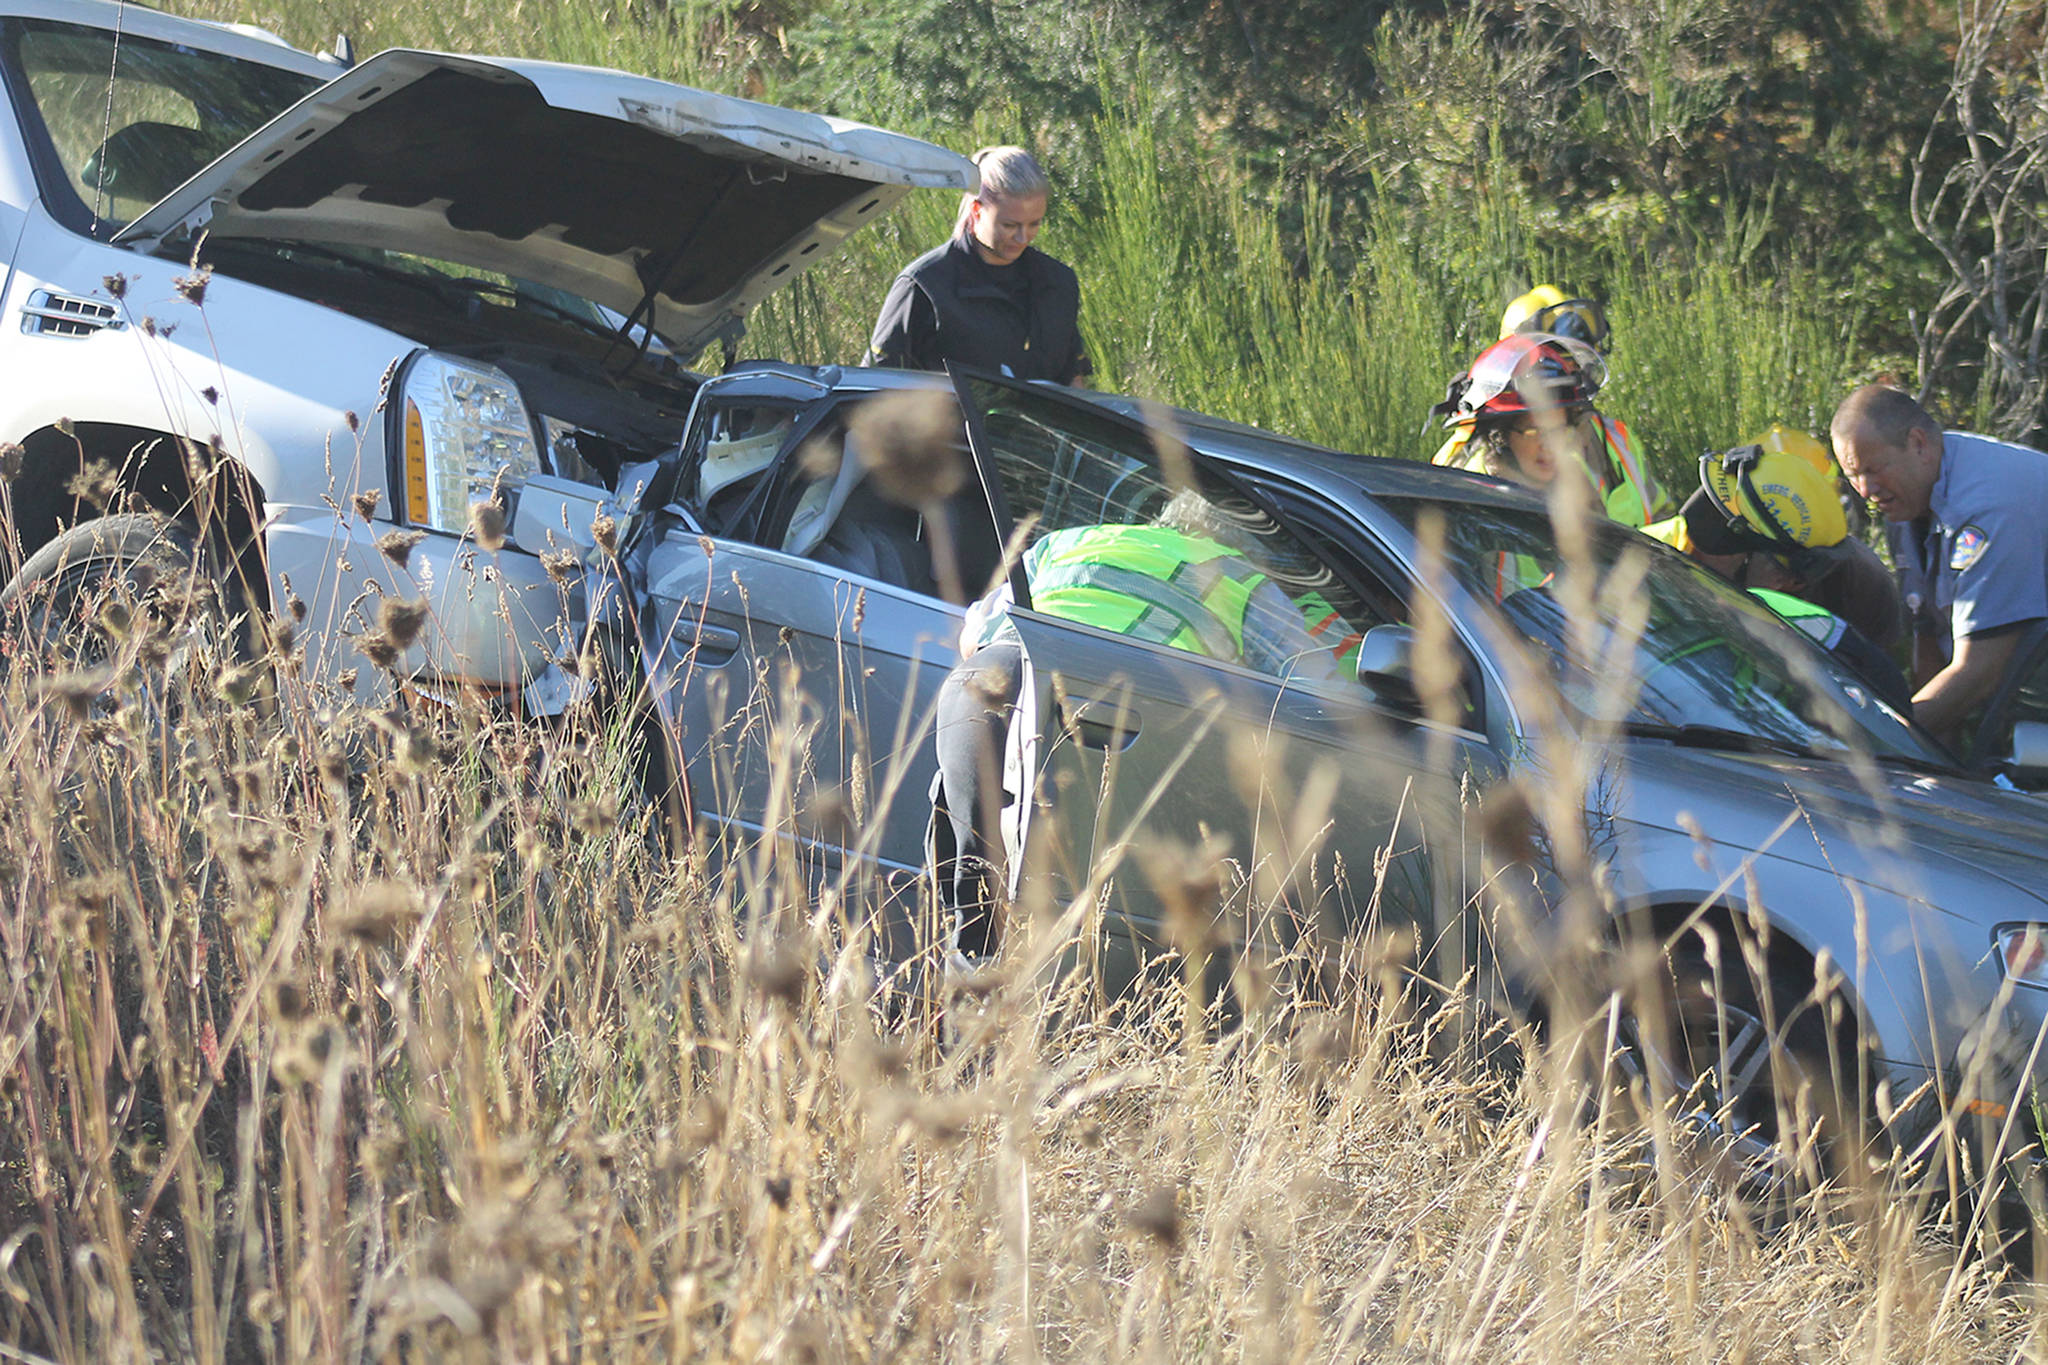 Highway 525 crash sends two to hospital as ‘precautionary measure’